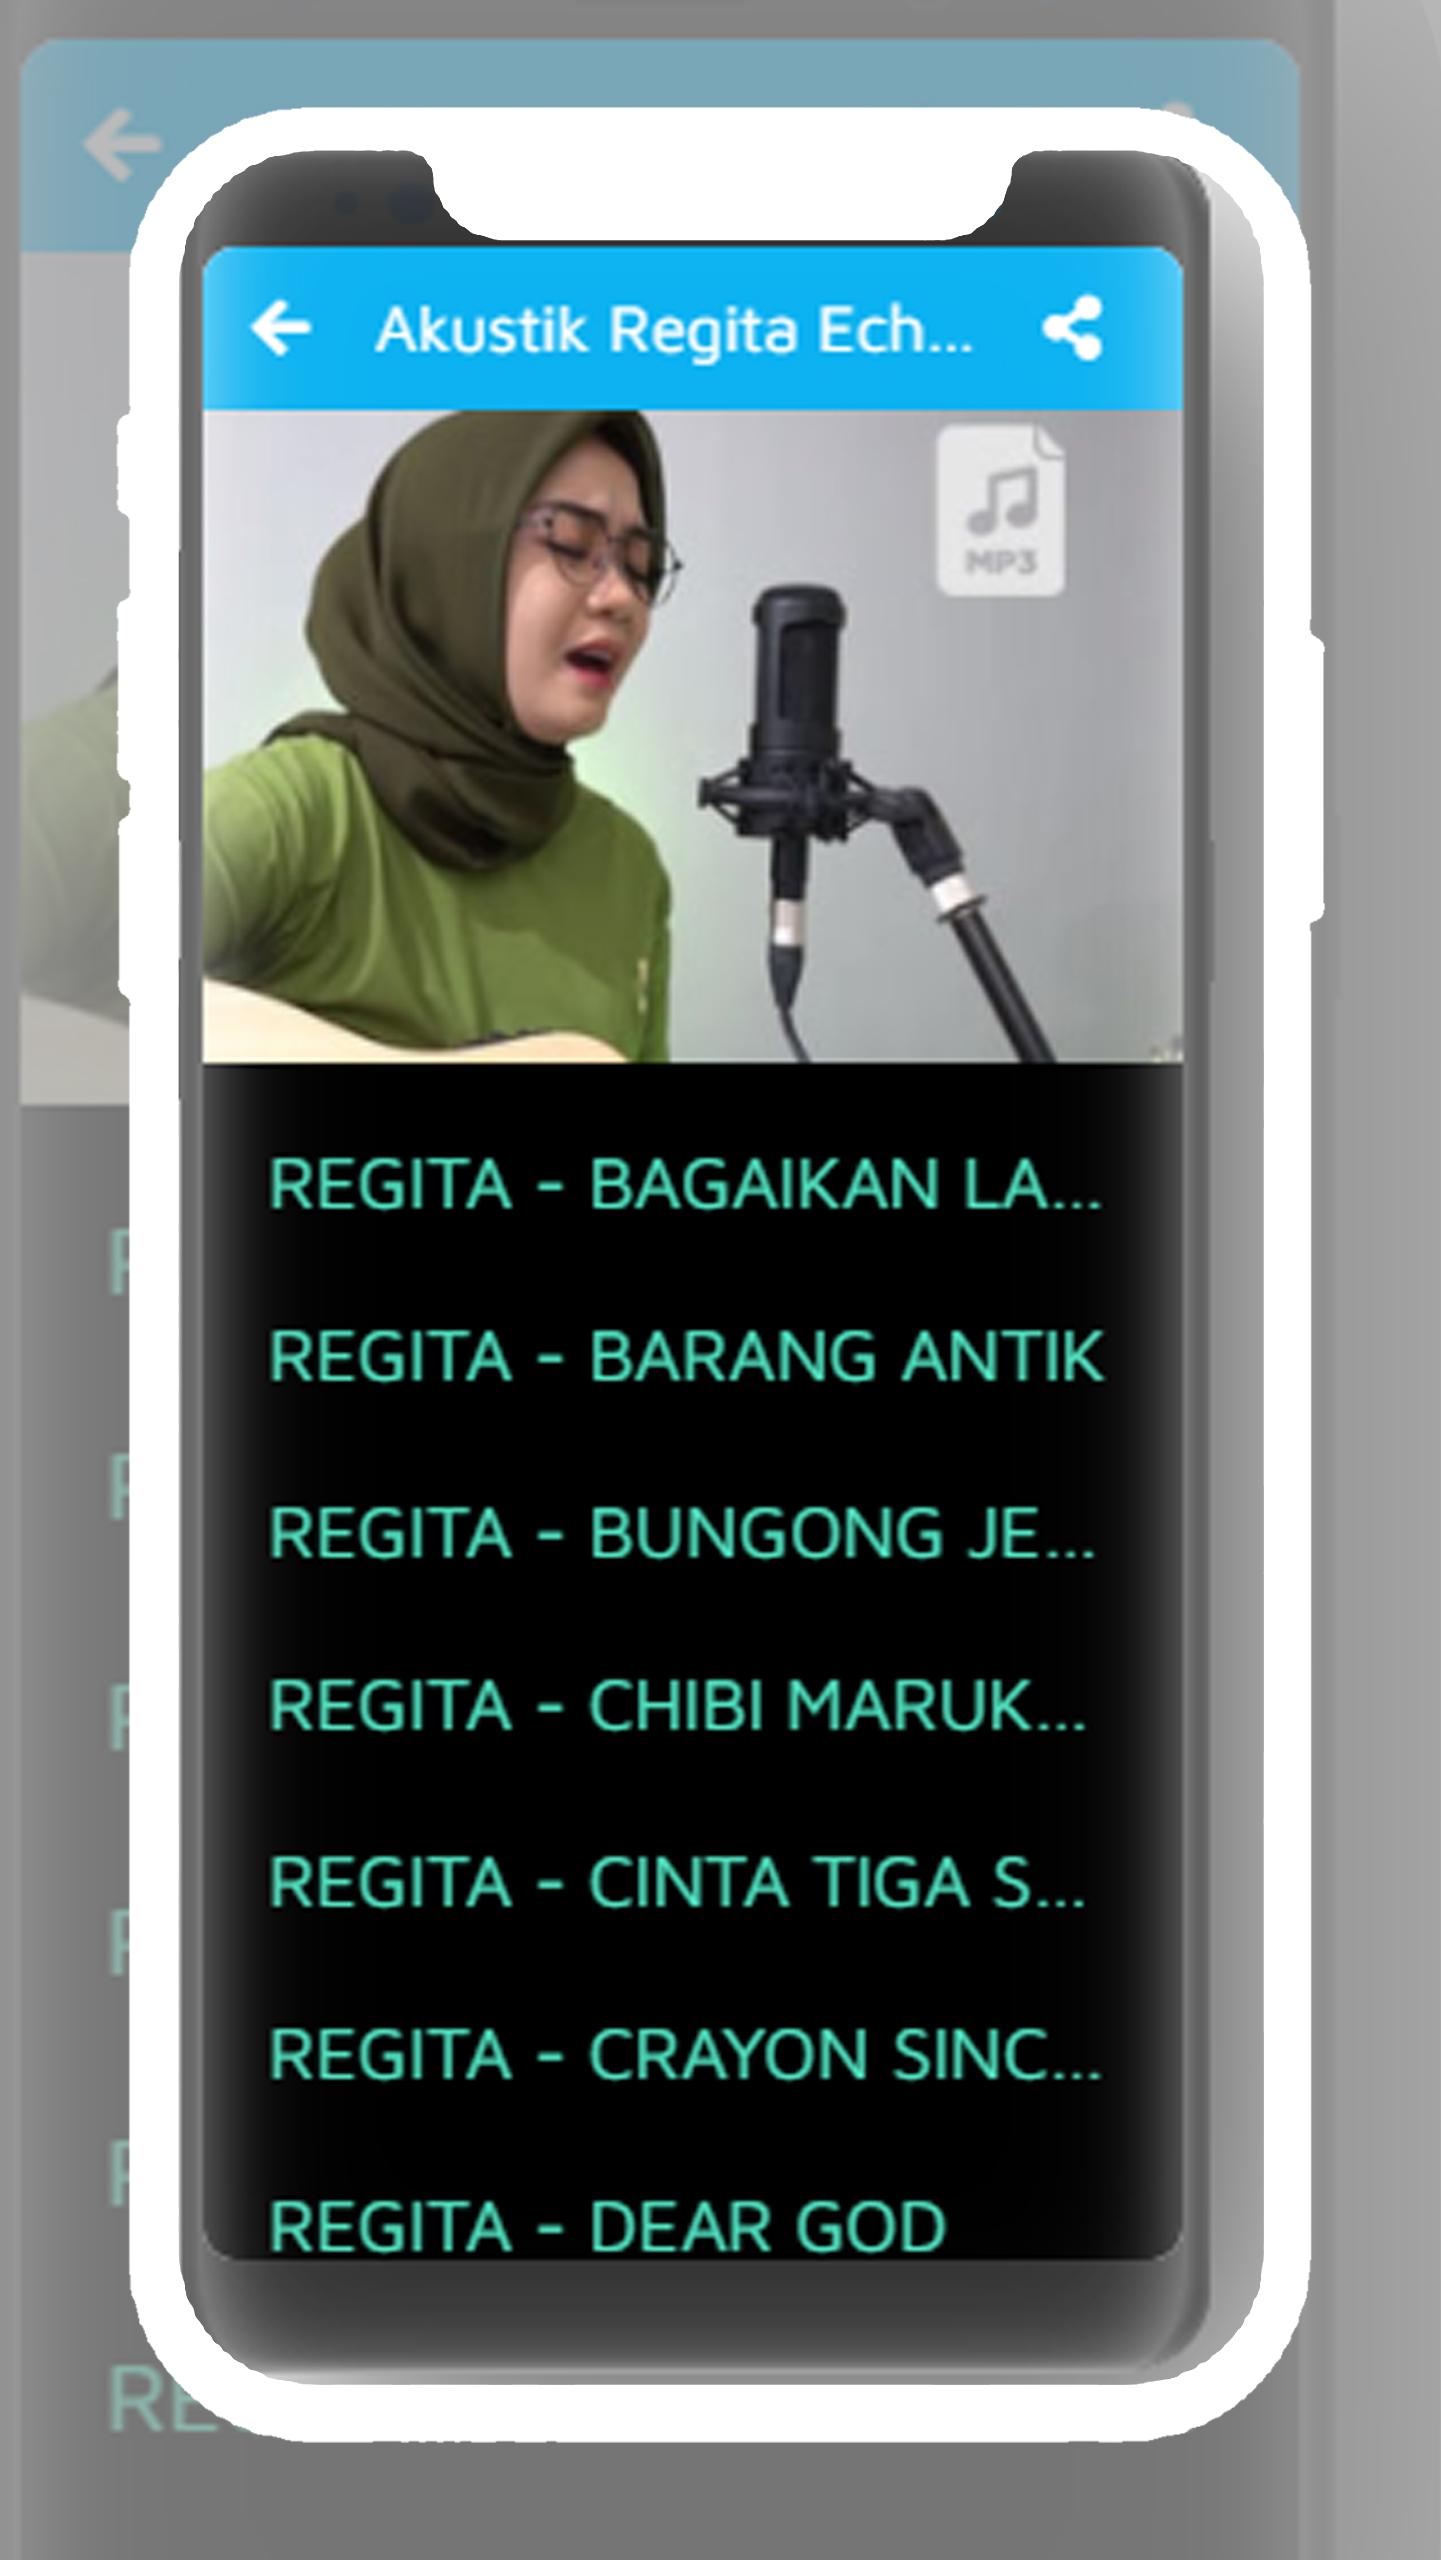 Regita Echa Full Album Offline For Android Apk Download